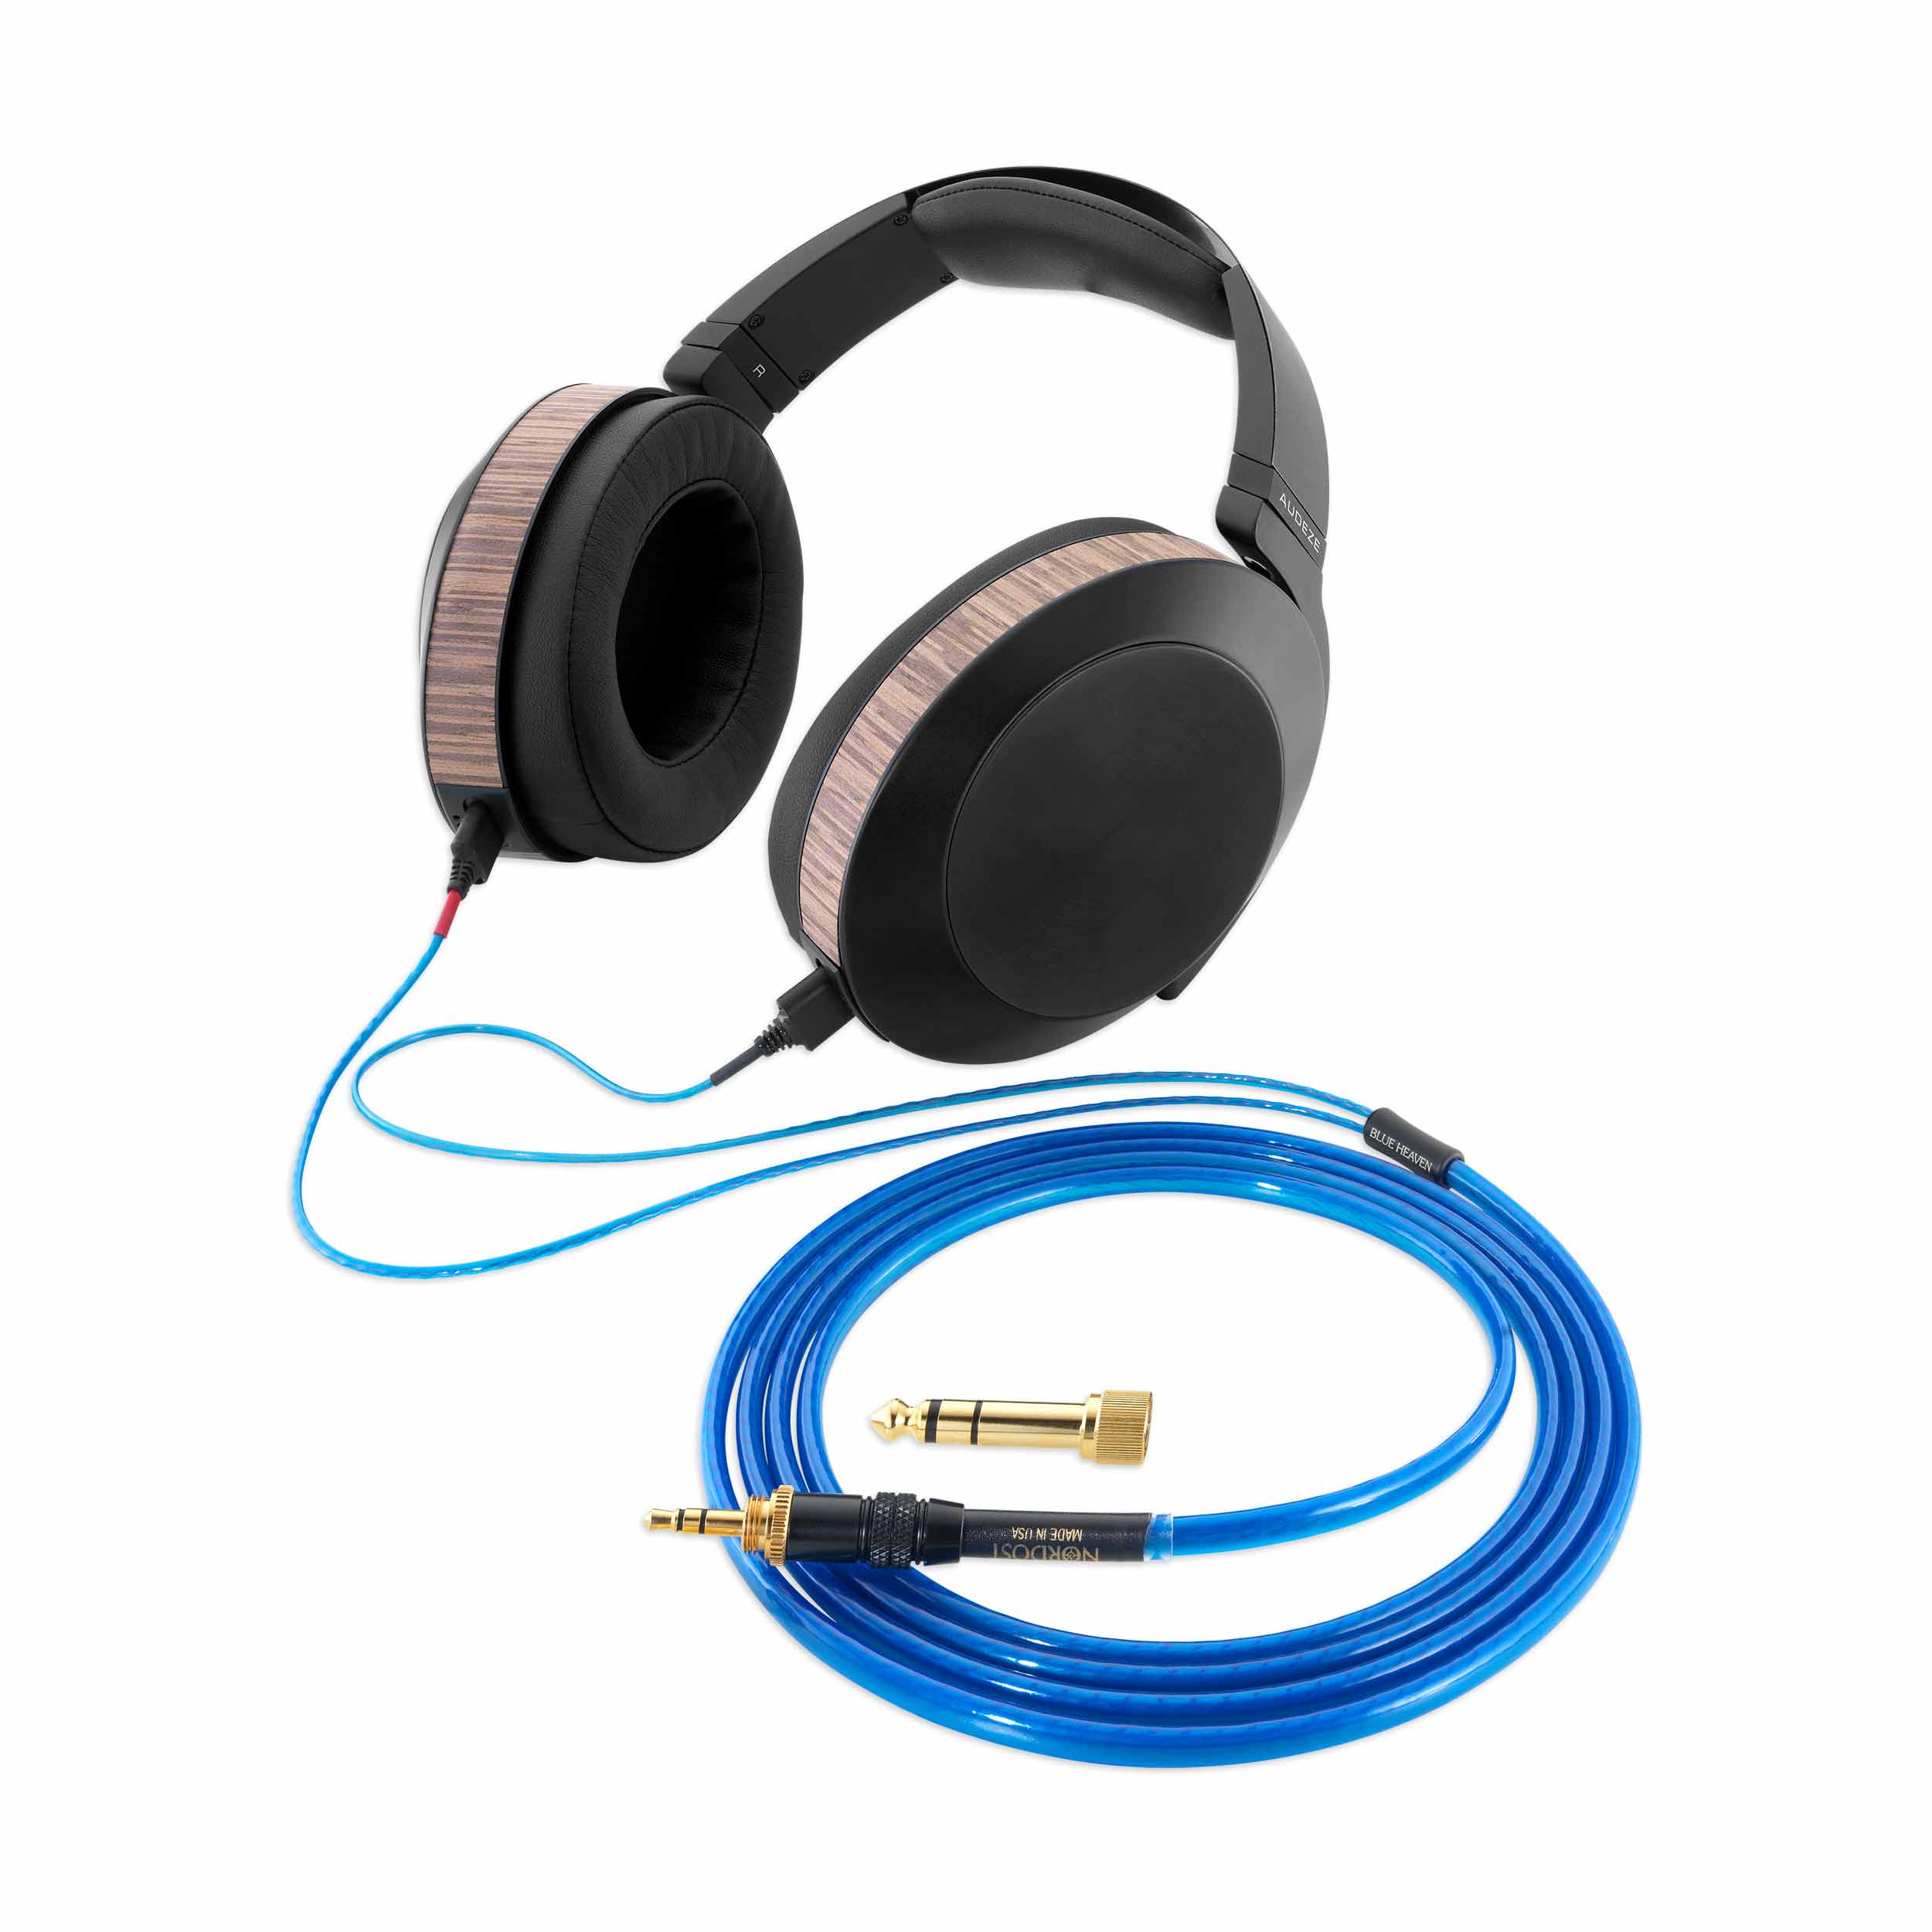 <p align="center">Blue Heaven Headphone Cable w/ AUDEZE EL-8 Headphones</p>